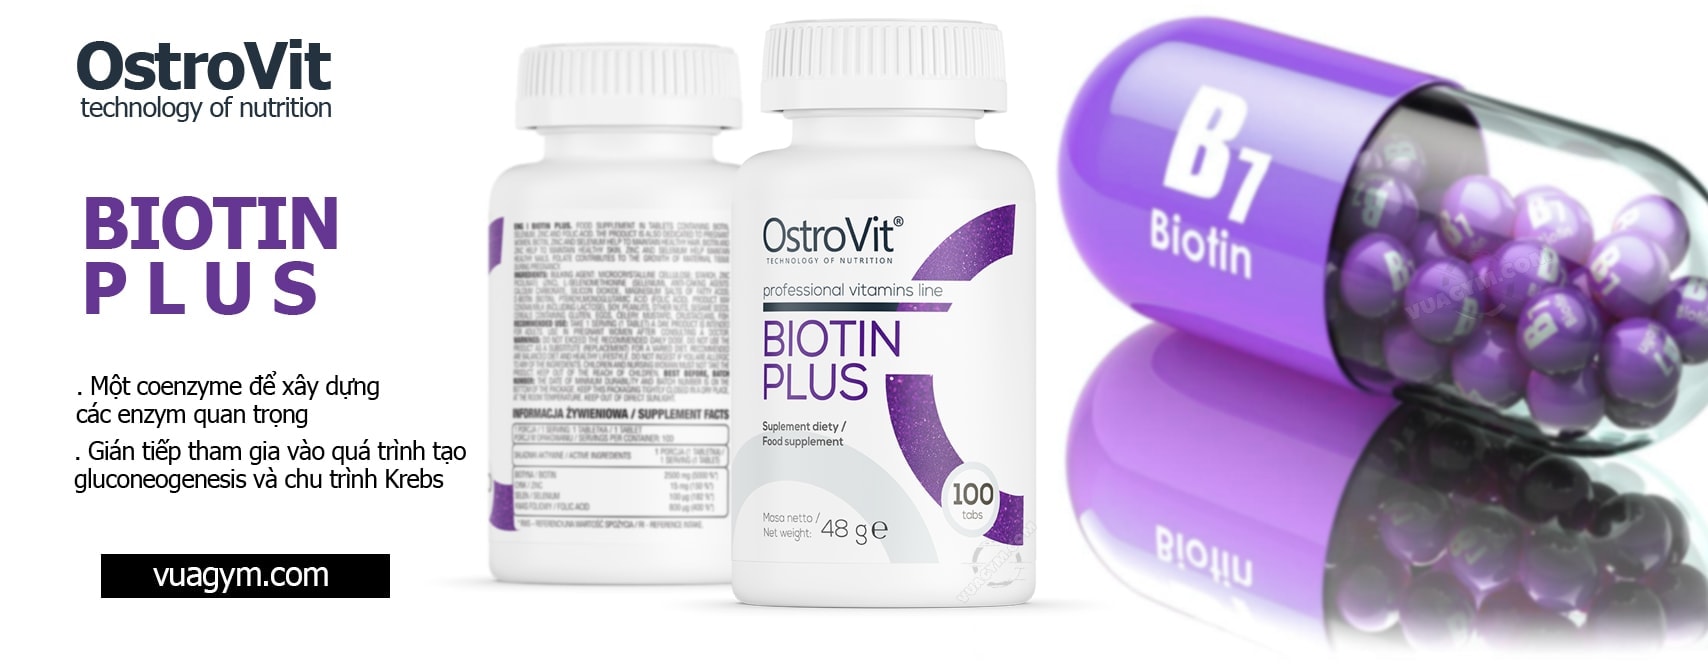 OstroVit - Biotin Plus (100 viên) - eng pl ostrovit biotin plus 100 mo ta